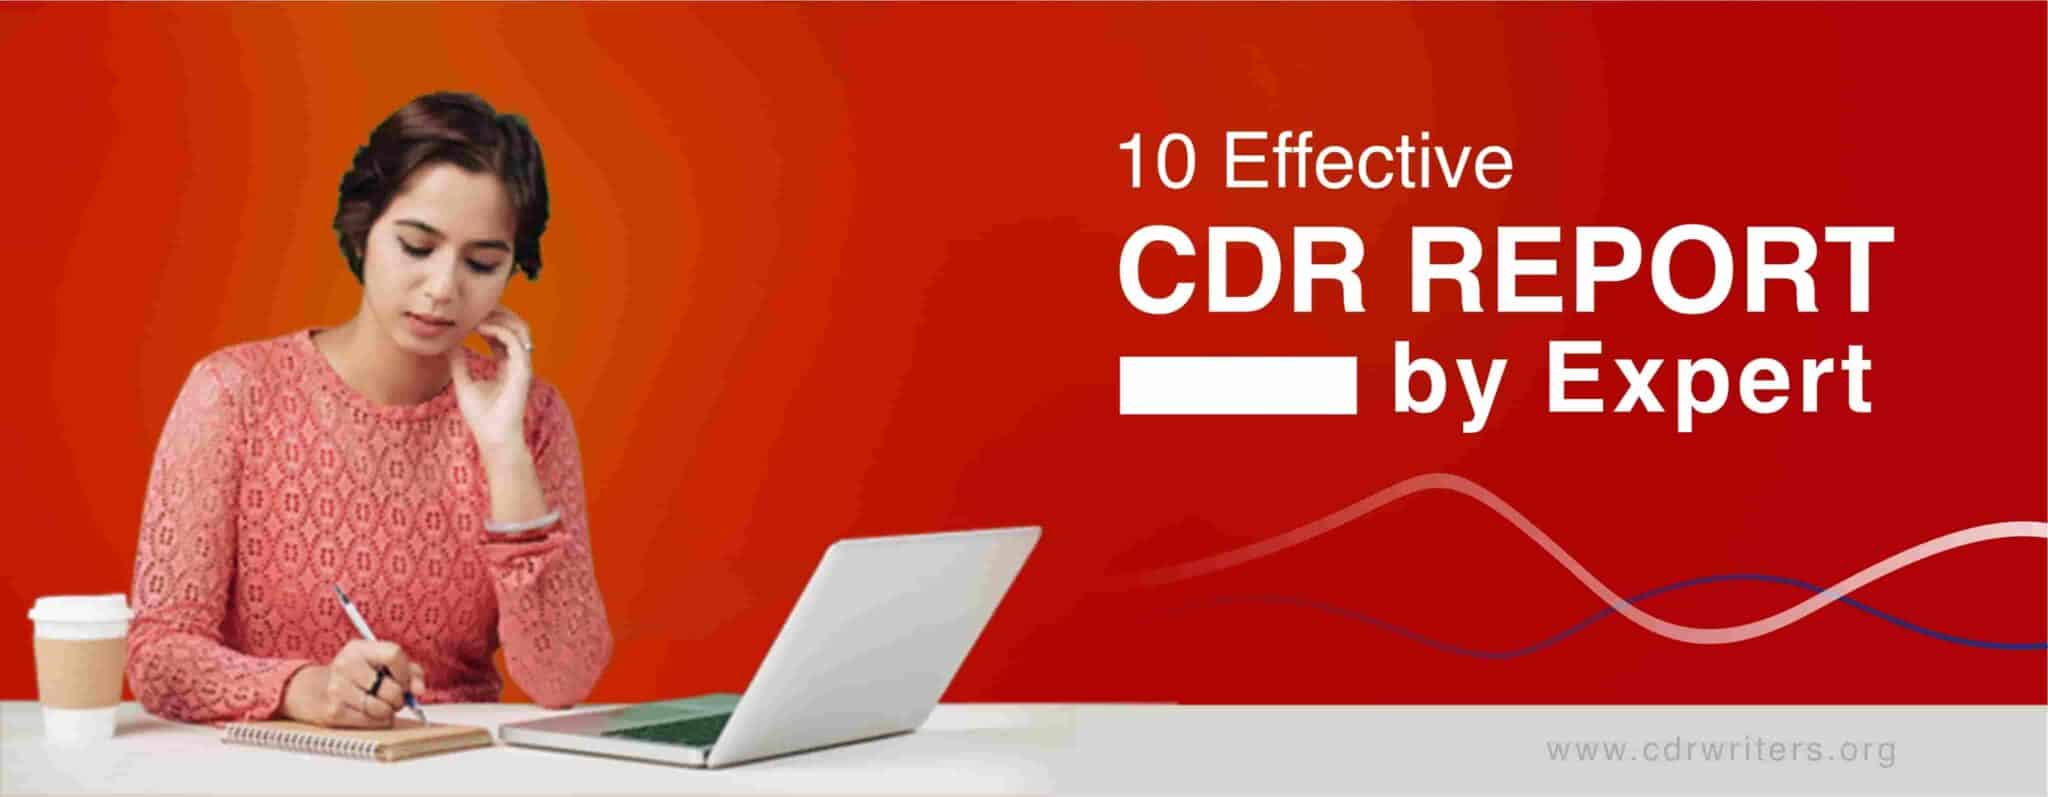 effective cdr report